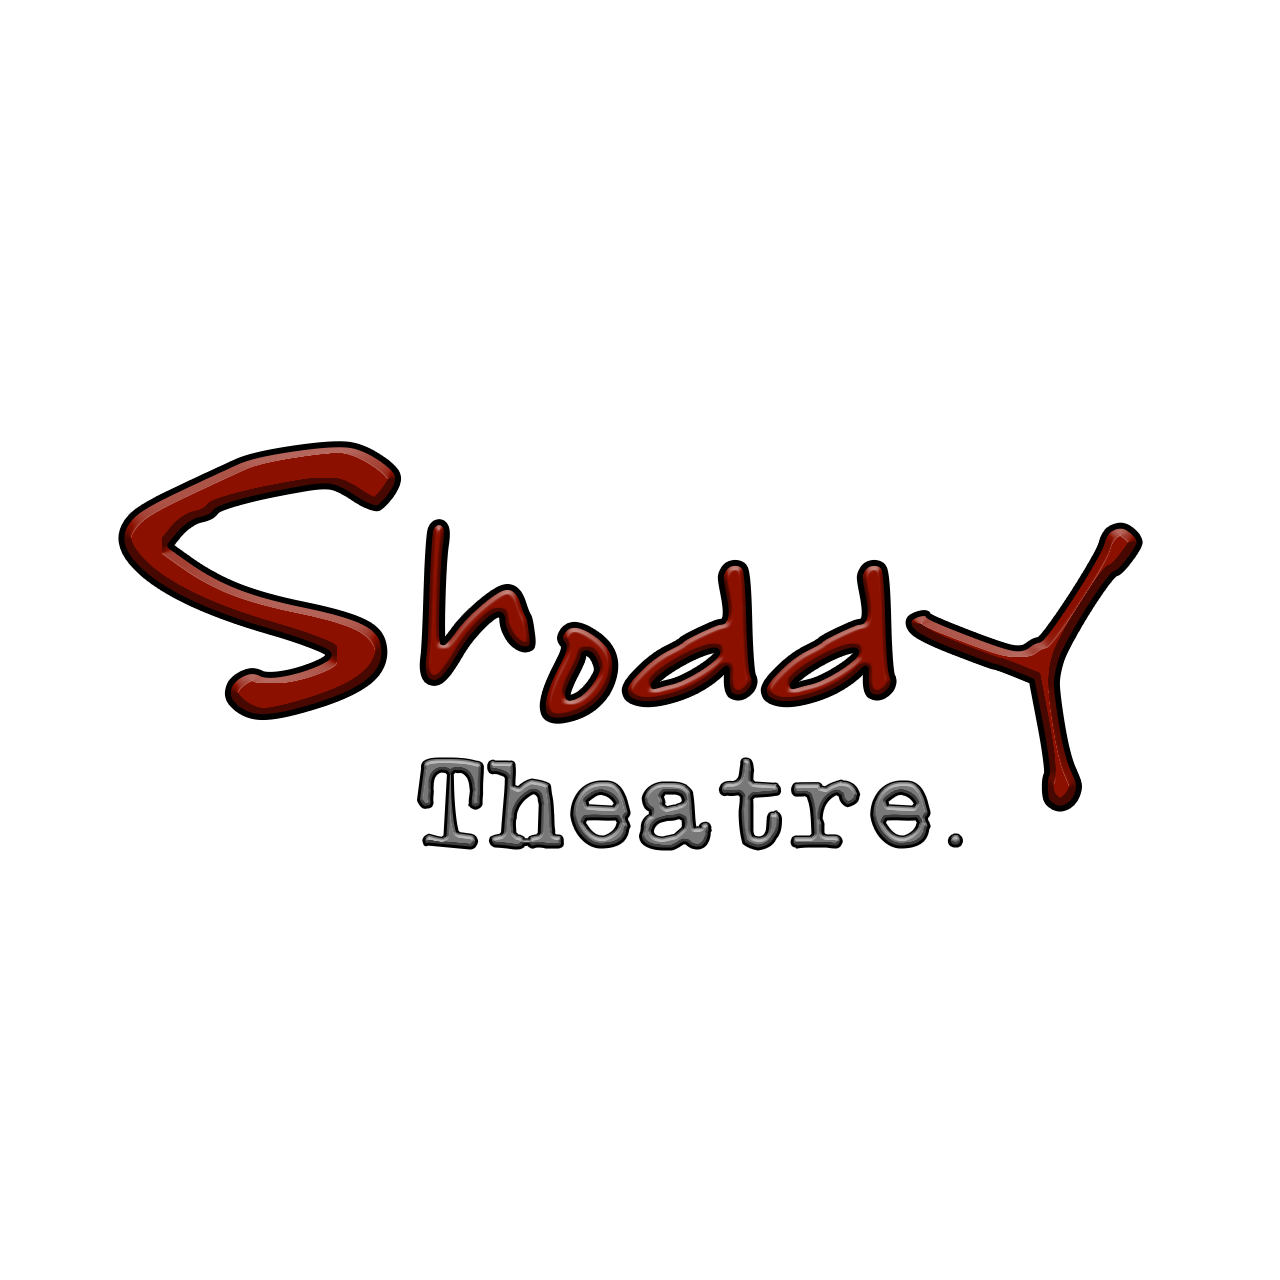 Shoddy Theatre